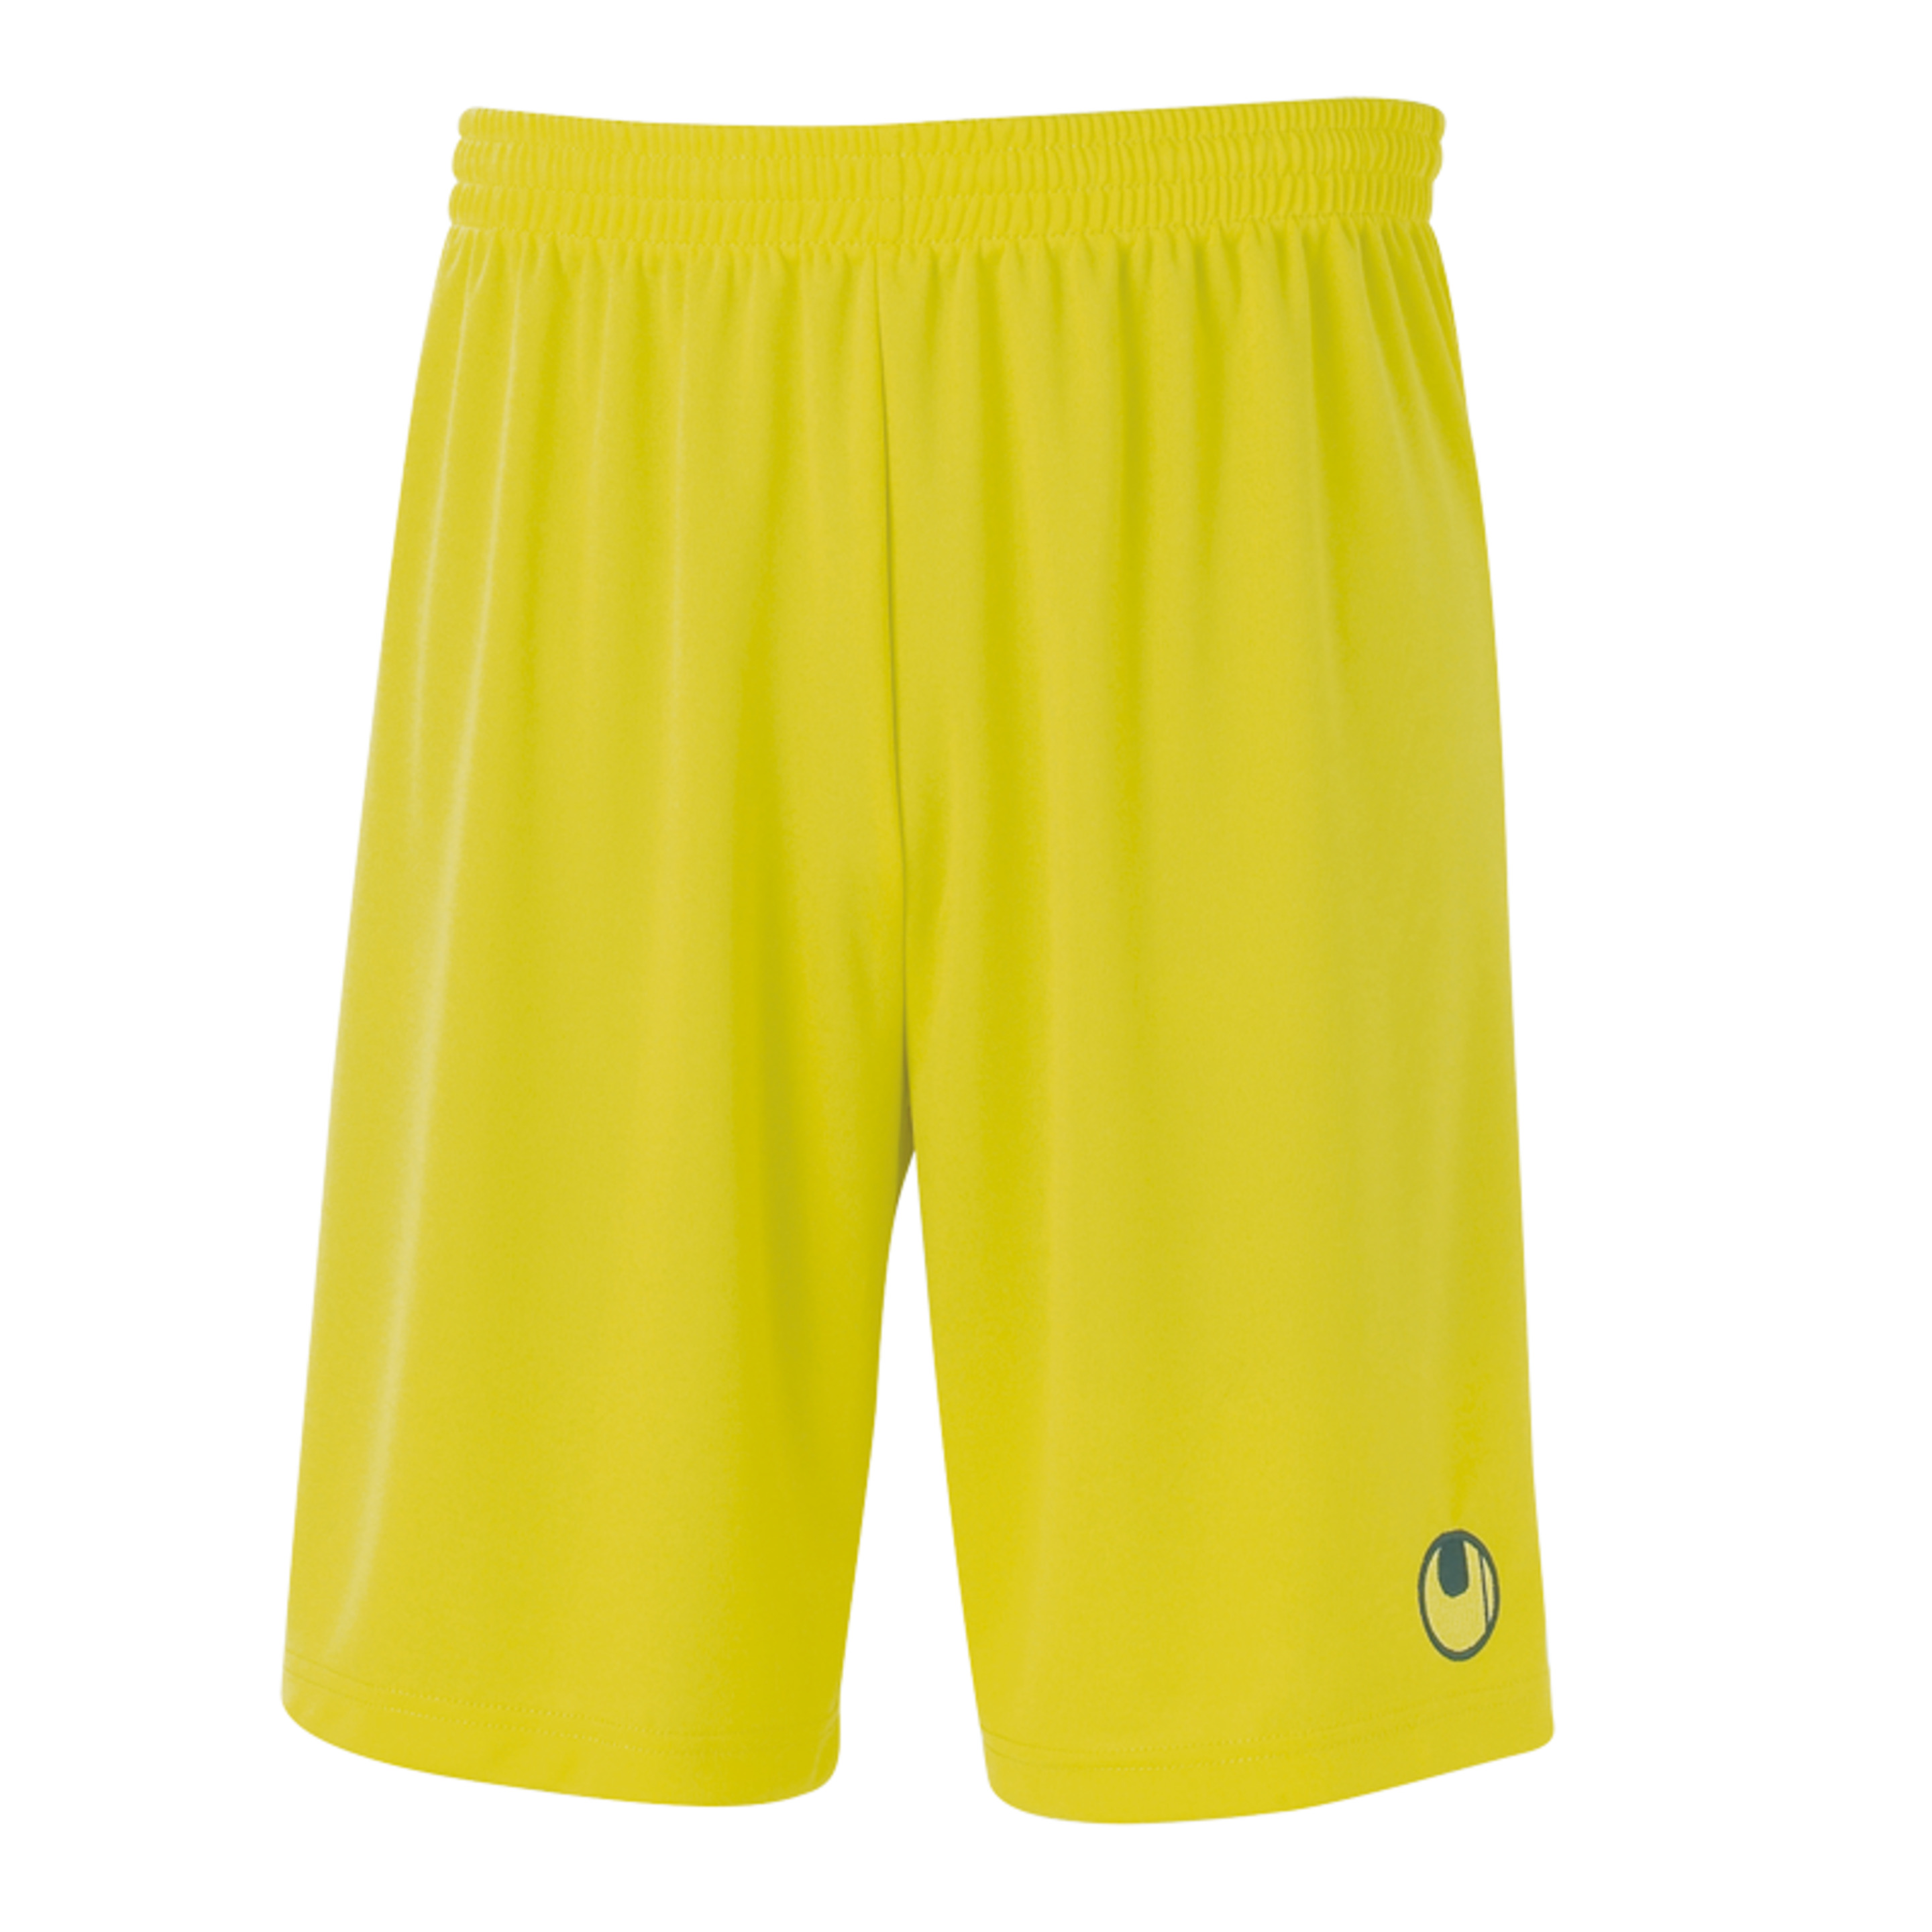 Center Basic Ii Shorts Without Slip Lima Amarillo Uhlsport - amarillo - 